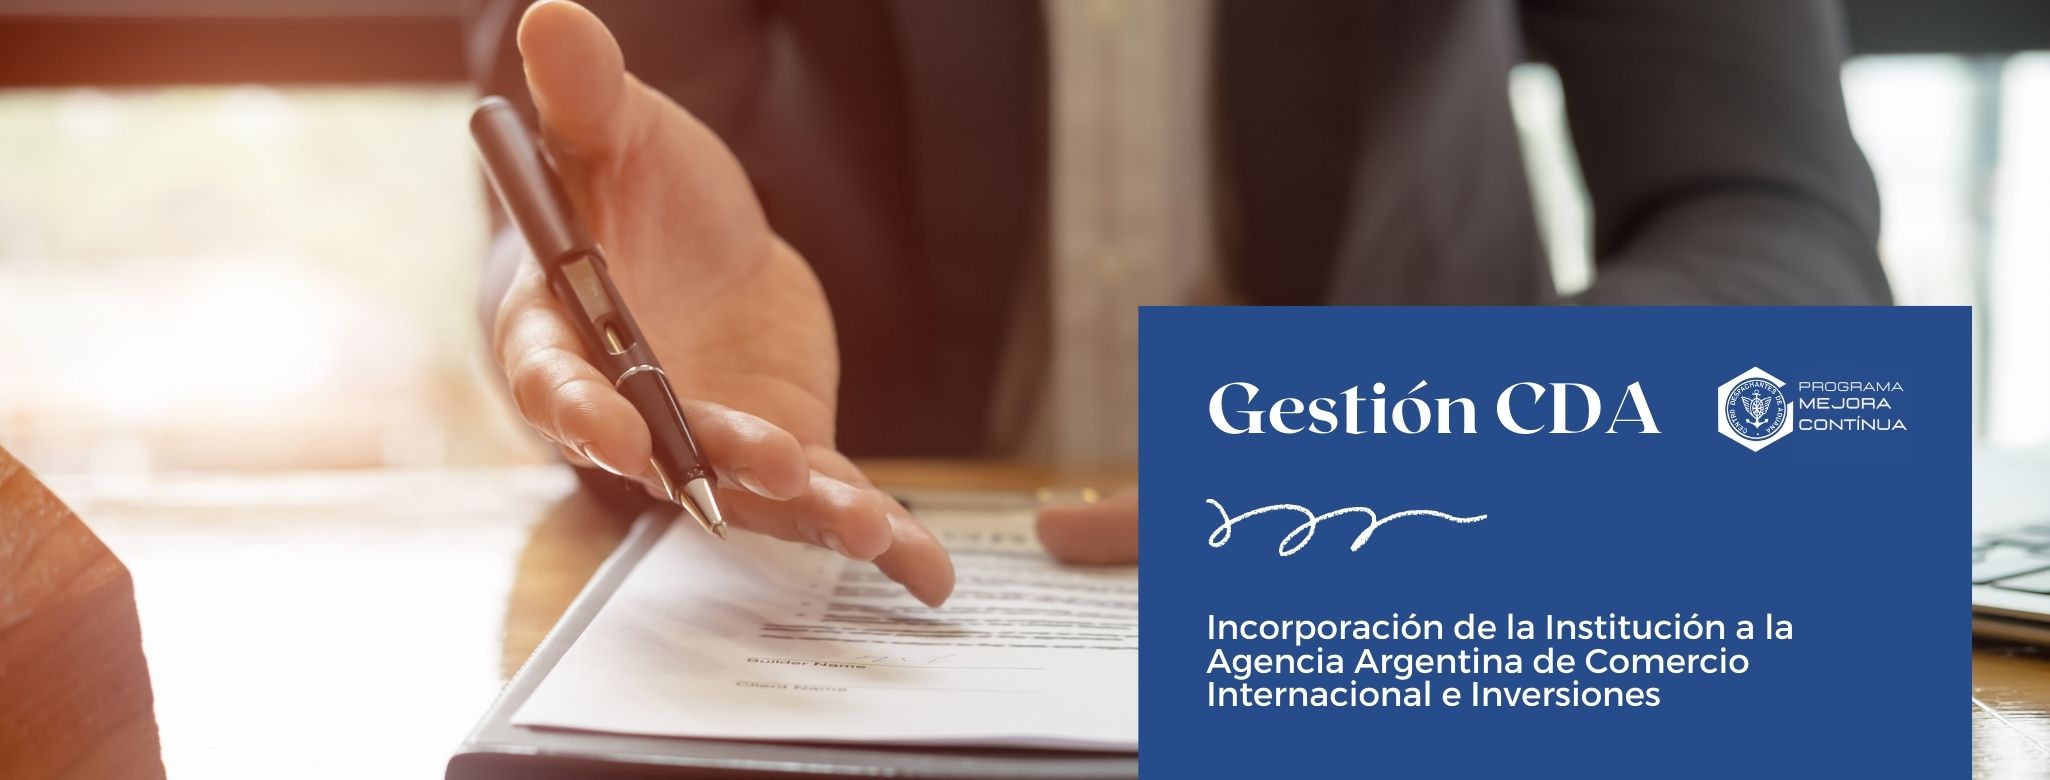 Gestión CDA: Incorporación de la Institución a la Agencia Argentina de Comercio Internacional e Inversiones 